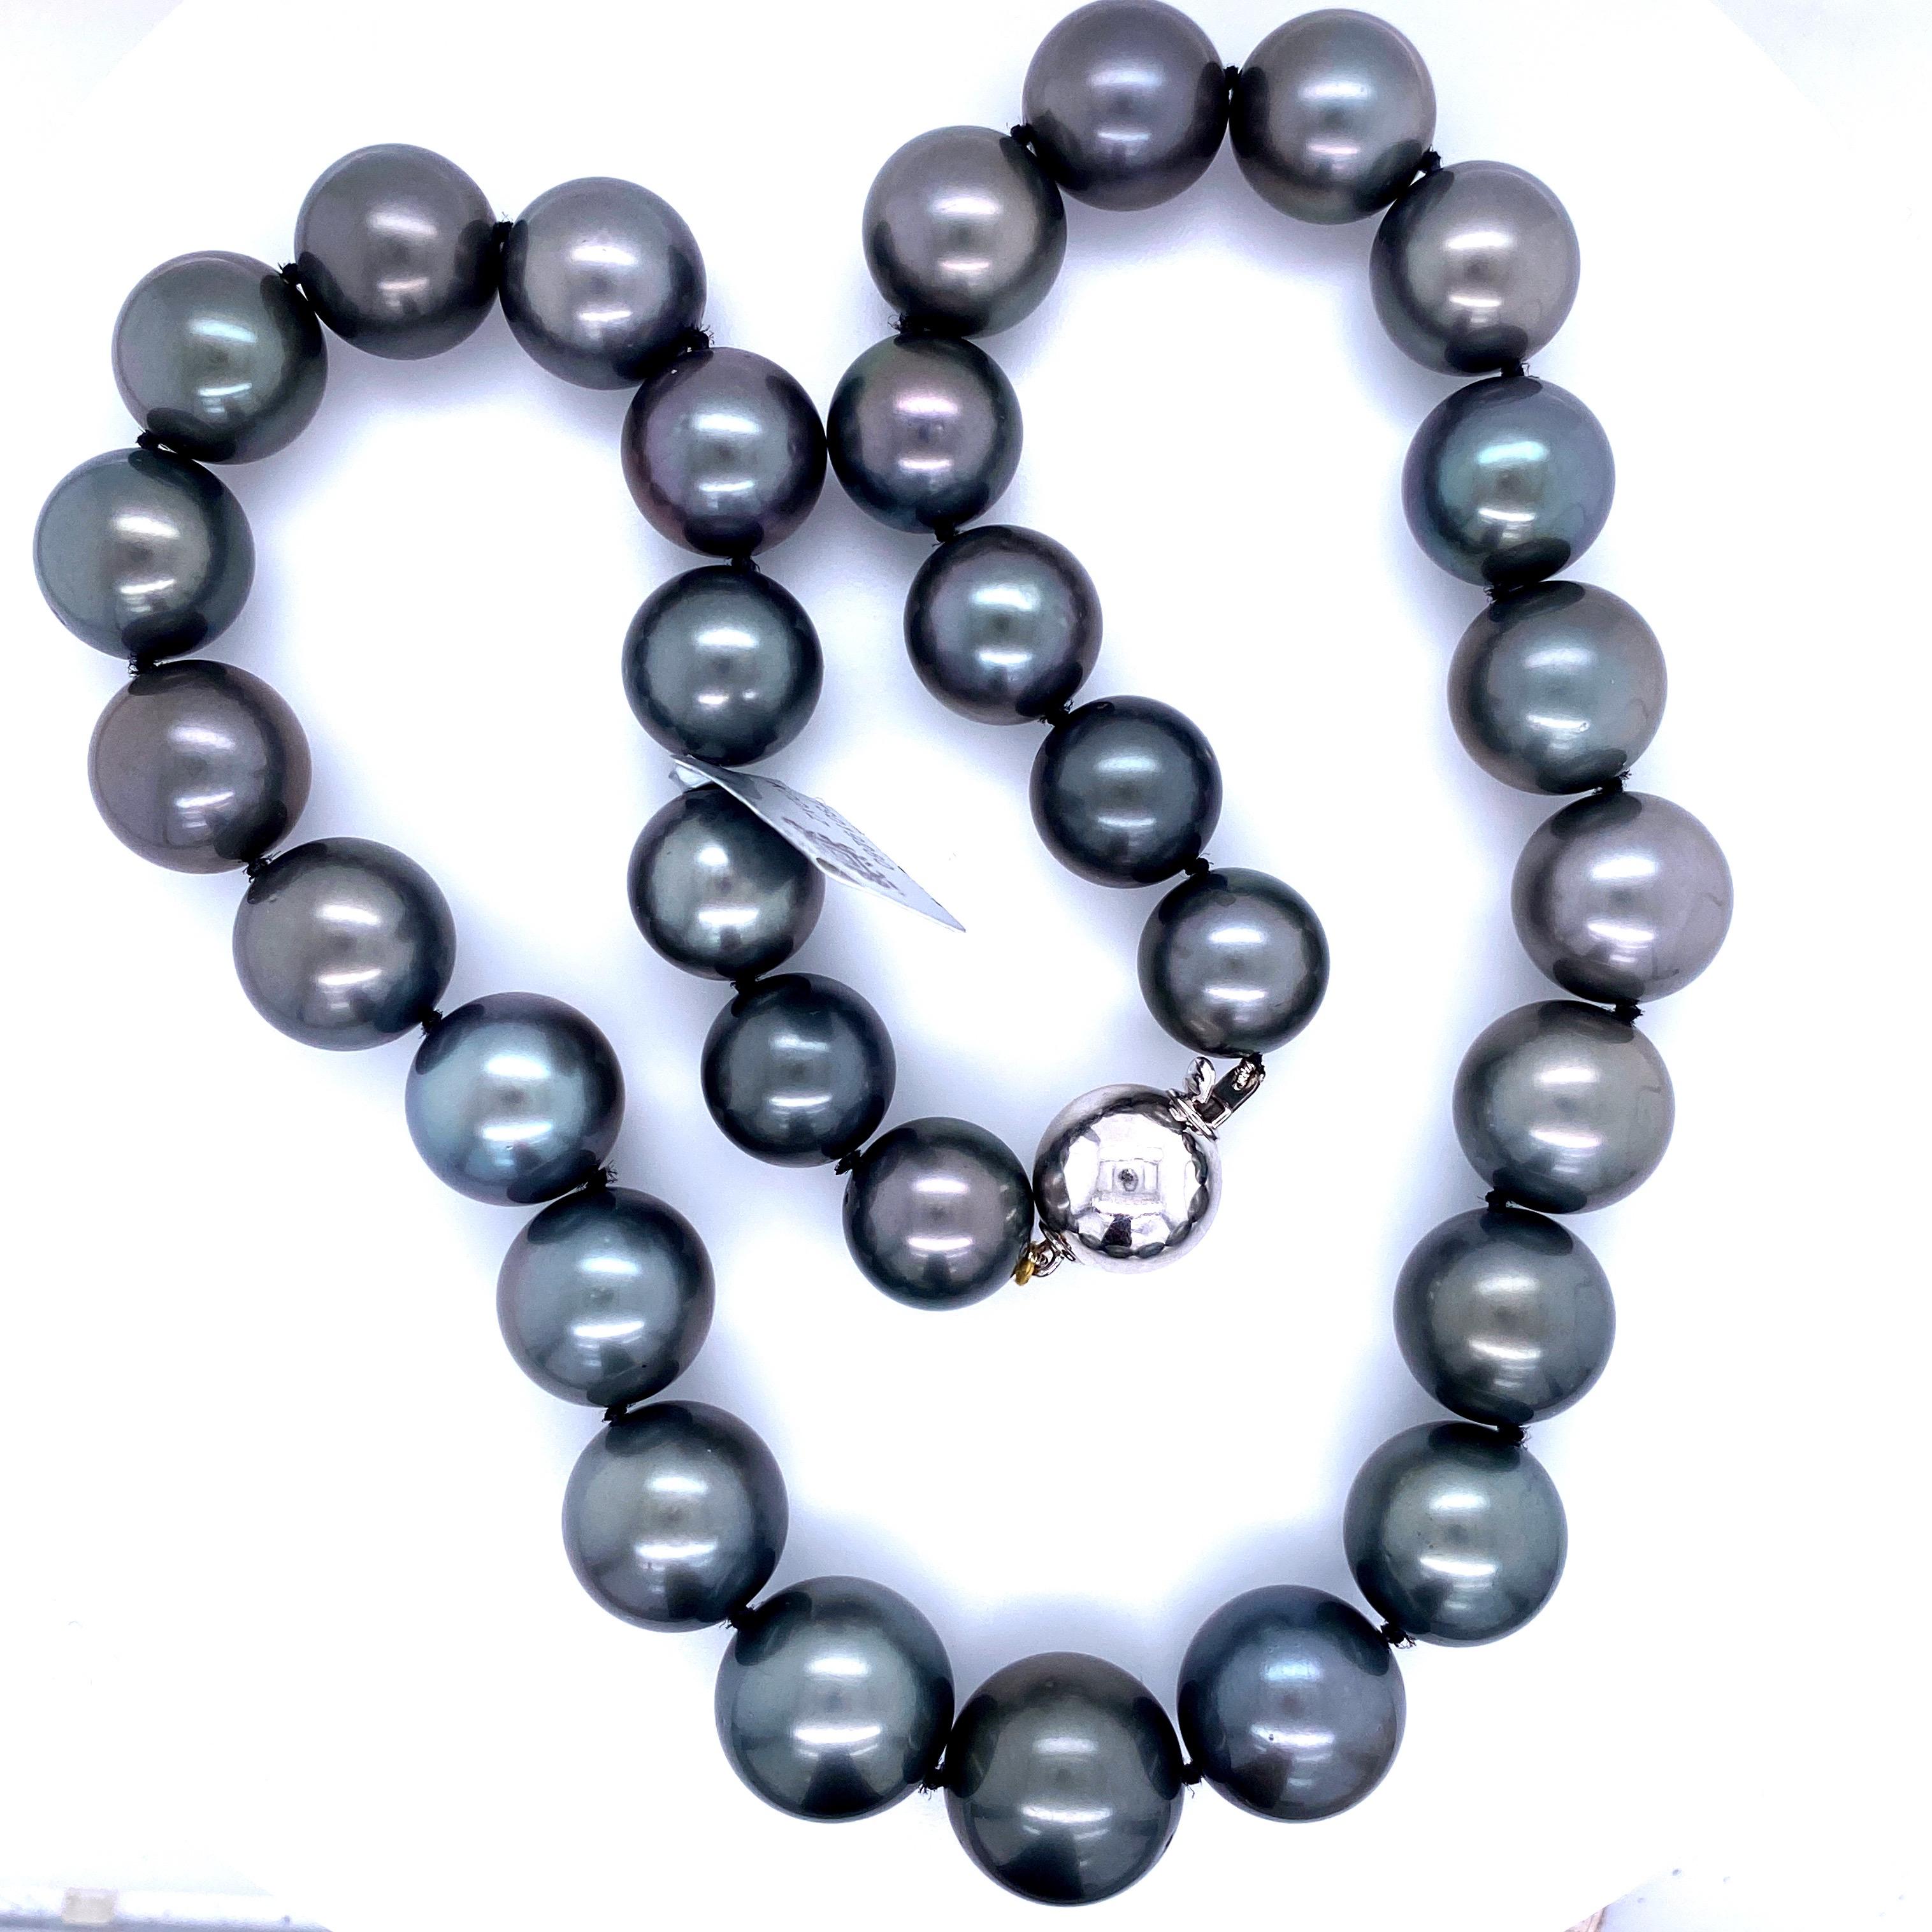 Perfekt abgestimmter Stamm von 31 runden grauen Tahiti-Perlen mit einer Größe von 12,1-14,9 MM mit einem 14k Weißgold Hochglanz-Verschluss. 

Qualität der Perlen: AAA
Perlglanz: AAA Ausgezeichnet
Perlmutt : Sehr dick

Der Strang kann auf Bestellung